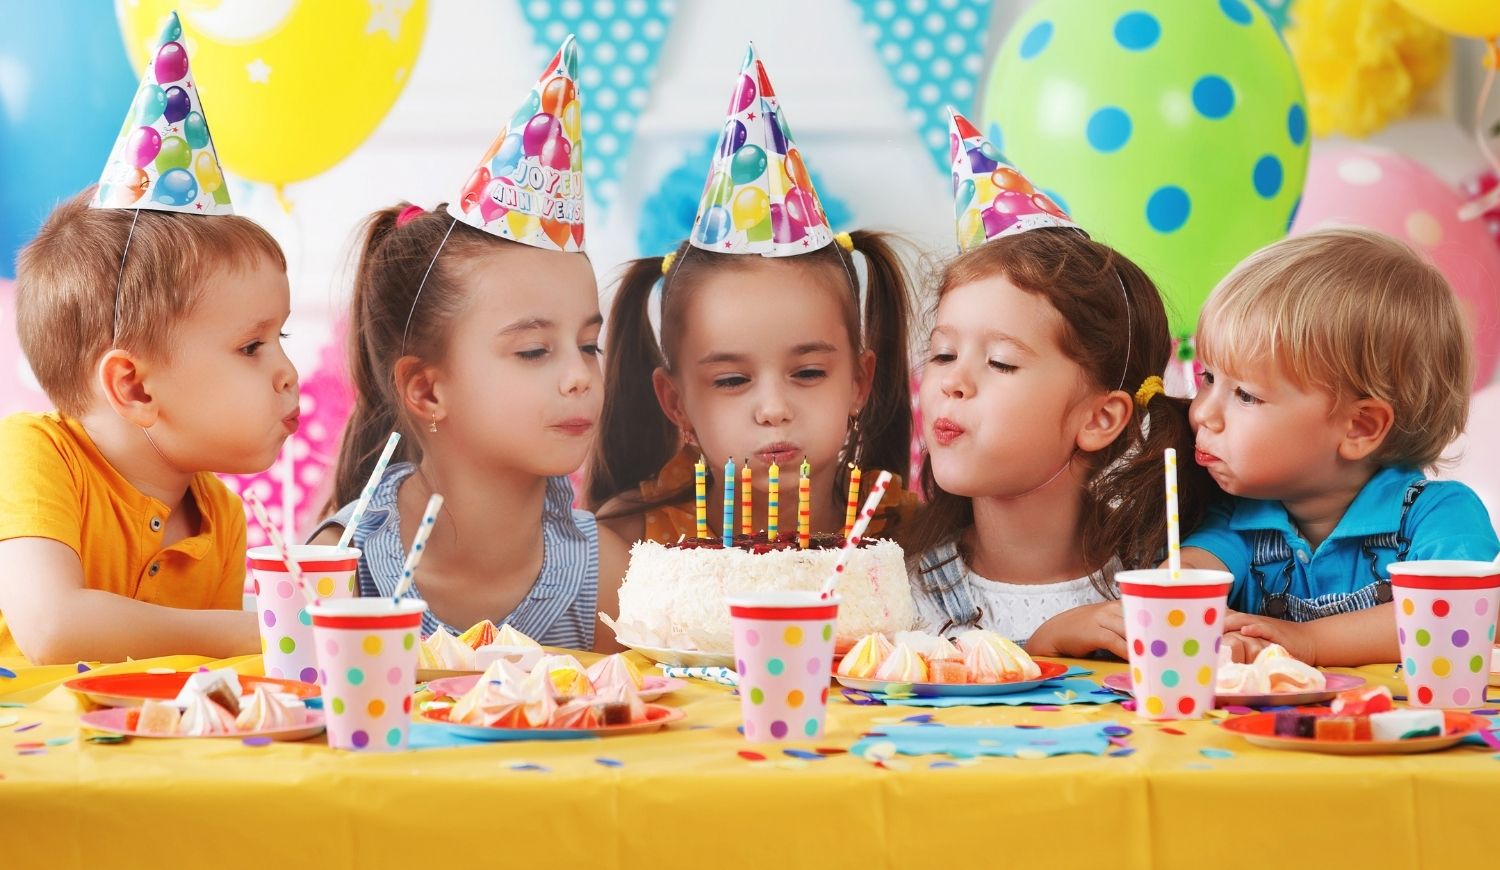 Festa de aniversário crianças – Apps no Google Play